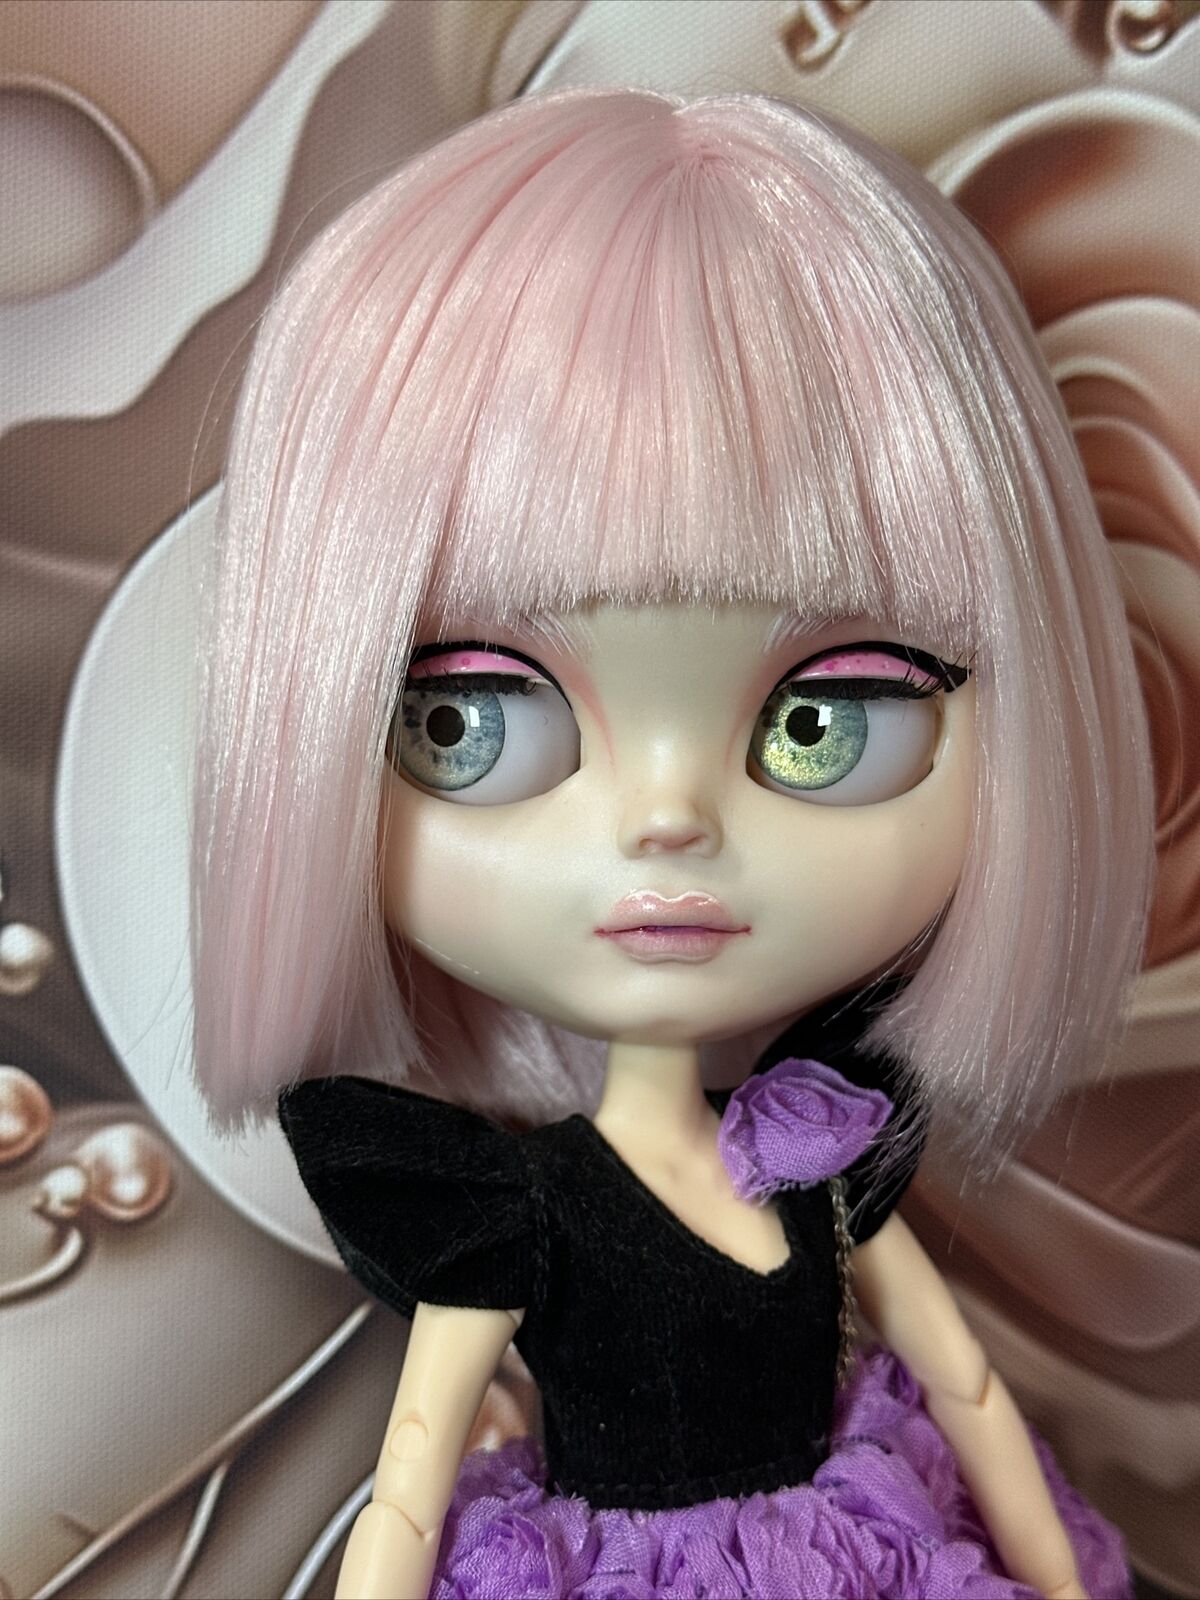 Custom Blythe Doll by BonBon Blythe.